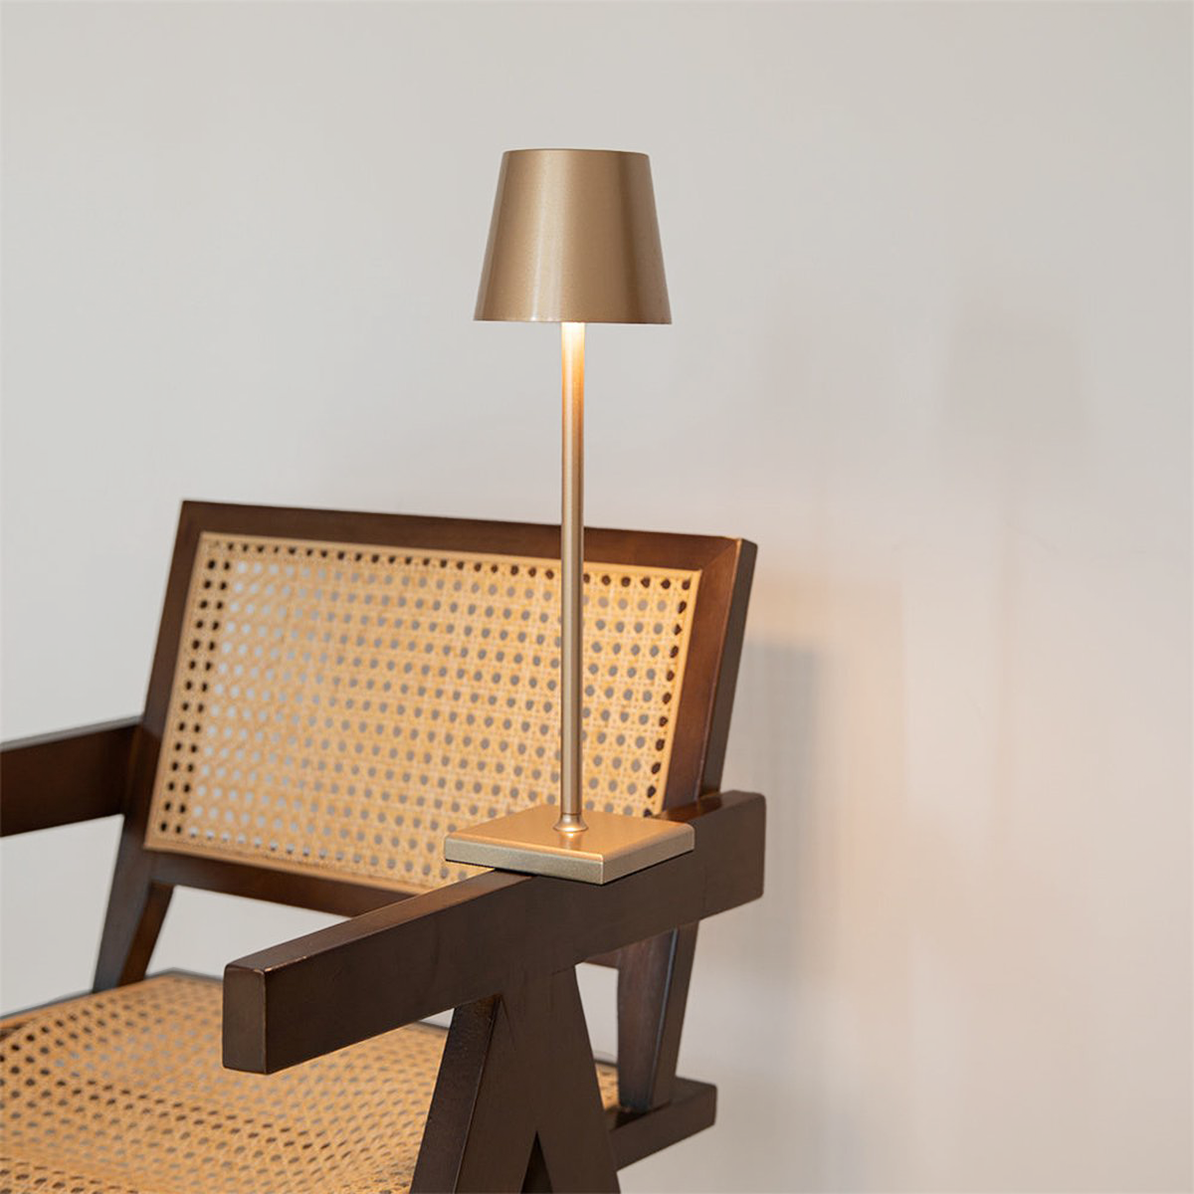 Ilumi | Tischleuchte mit Touch-Steuerung - - - Außenlampen Tischlampen Tragbare Lampen - Concept Frankfurt